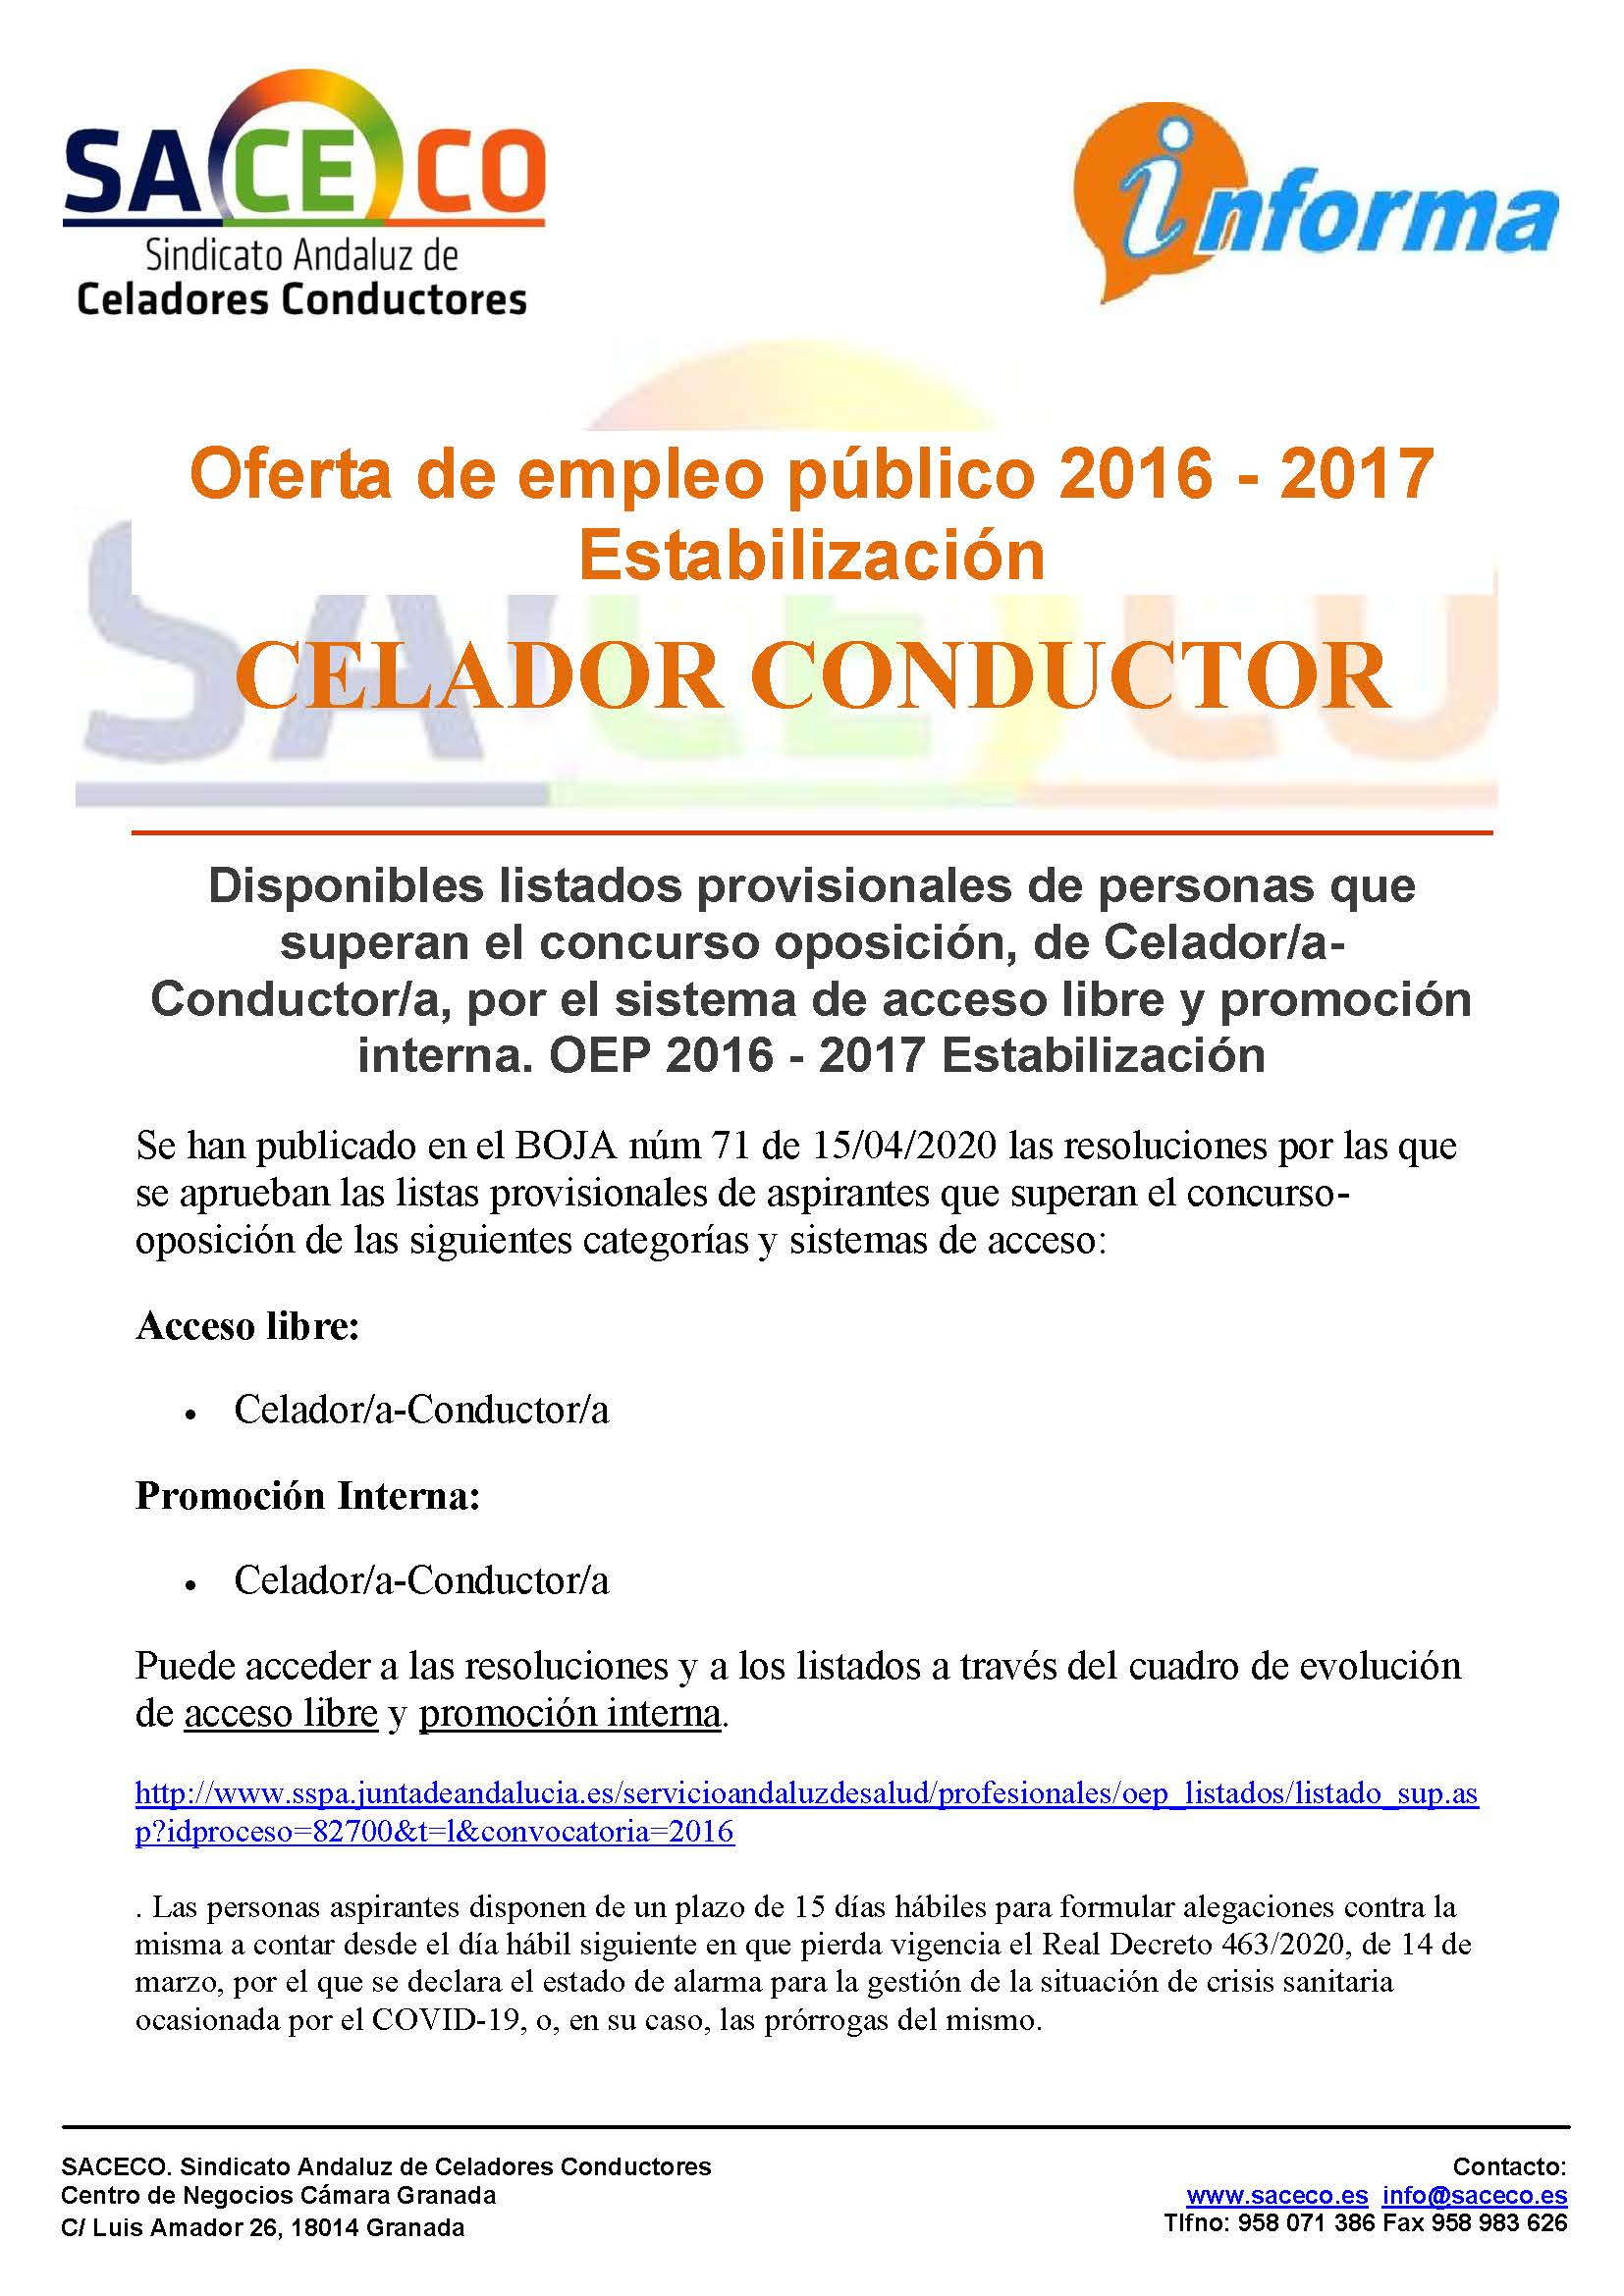 Celador/a-Conductor/a – Disponibles listados provisionales de personas que  superan el concurso oposición | SACECO